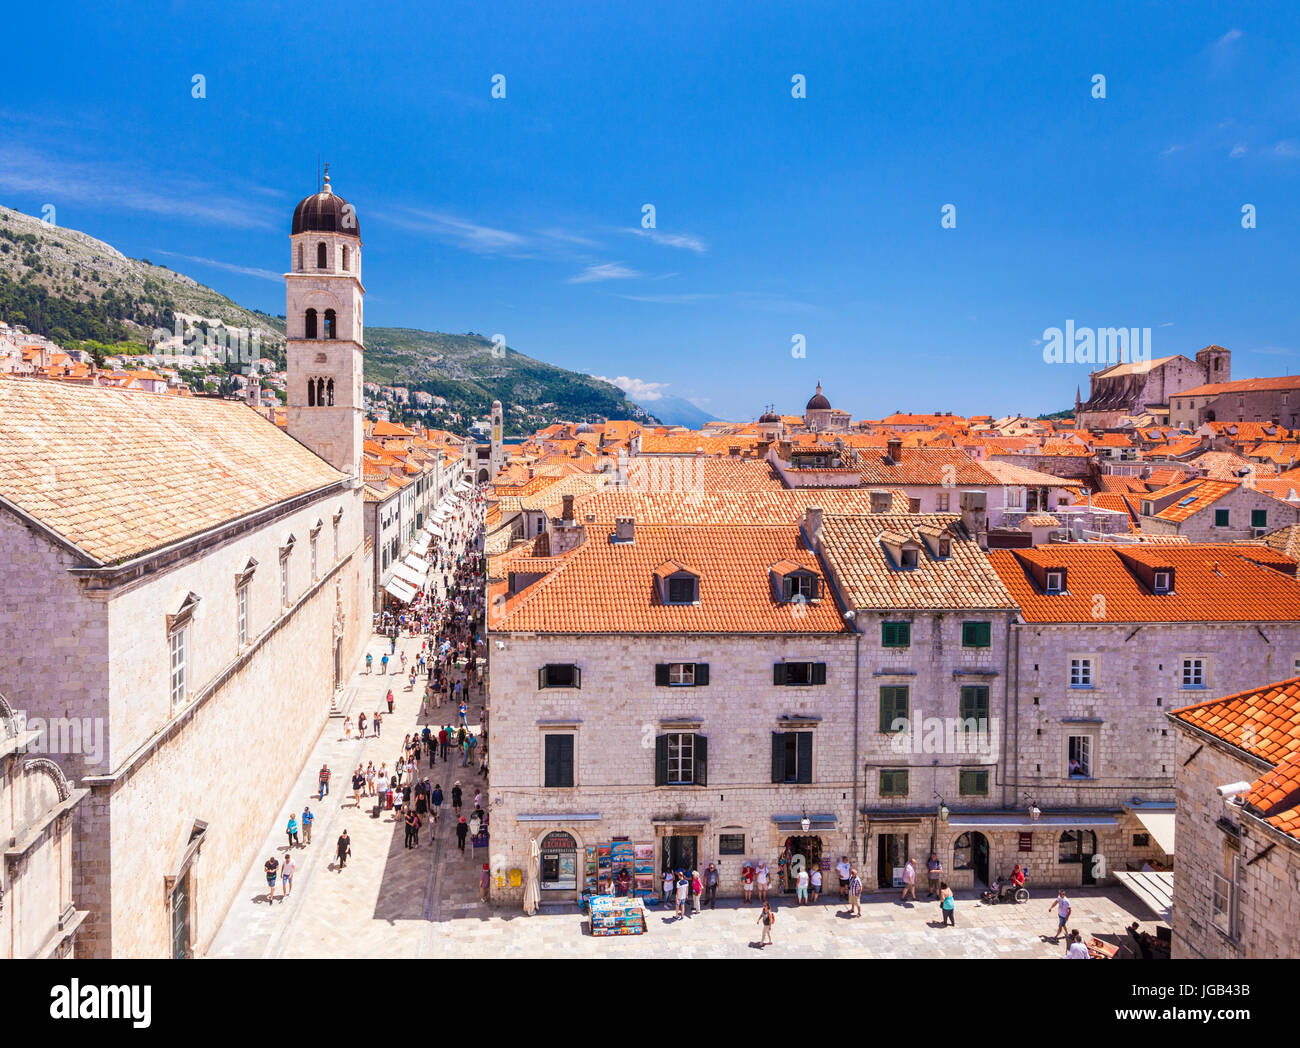 Croazia Dubrovnik Croazia vista da mura del stradun strada principale placa Dubrovnik Dubrovnik stradun paese vecchio di Dubrovnik Dubrovnik Croazia Foto Stock